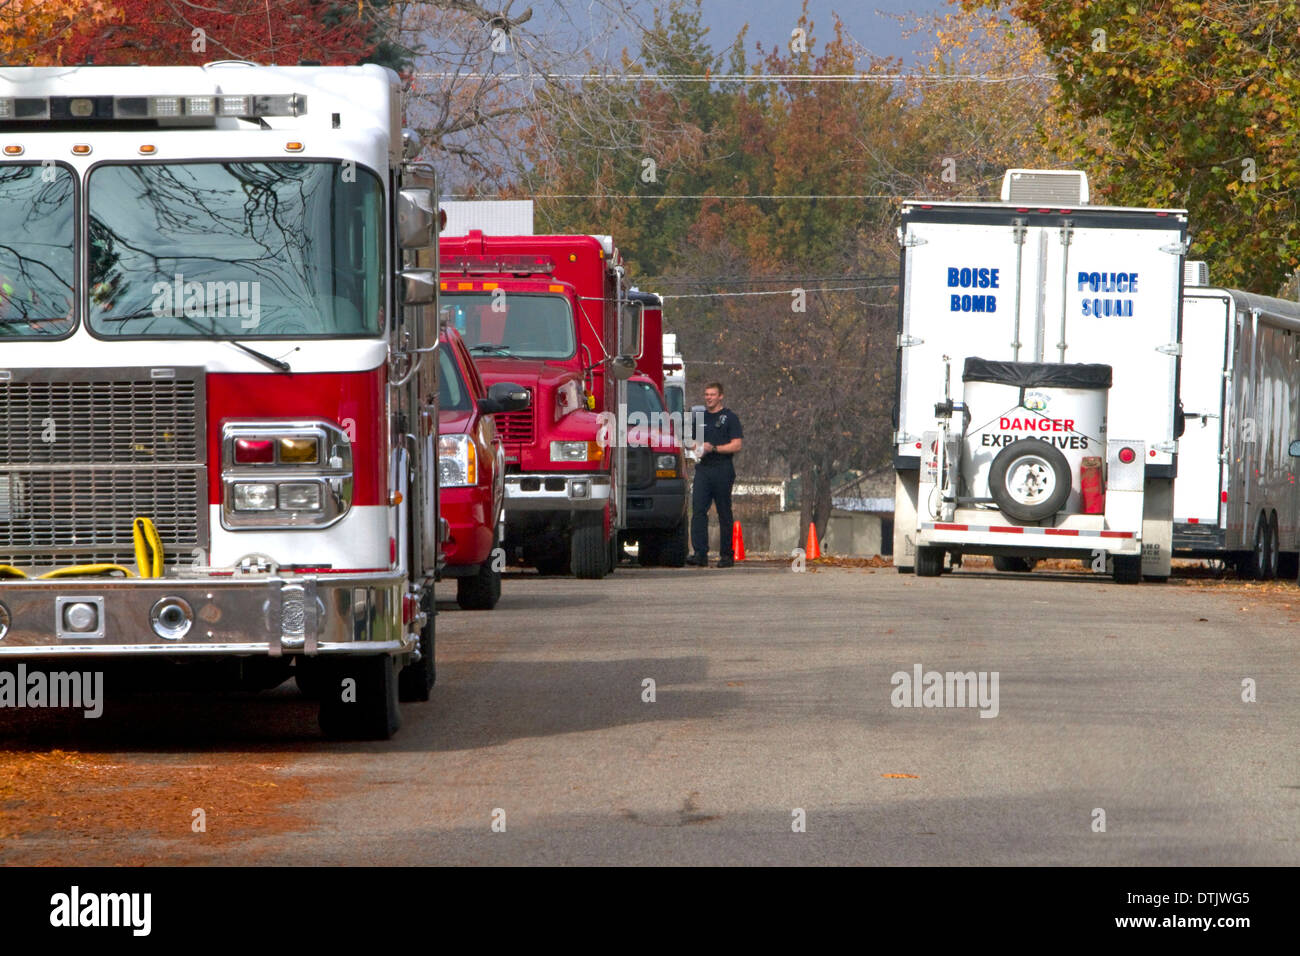 Motori Fire e unità di bomba sulla scena di un materiali esplosivi incidente a Boise, Idaho, Stati Uniti d'America. Foto Stock